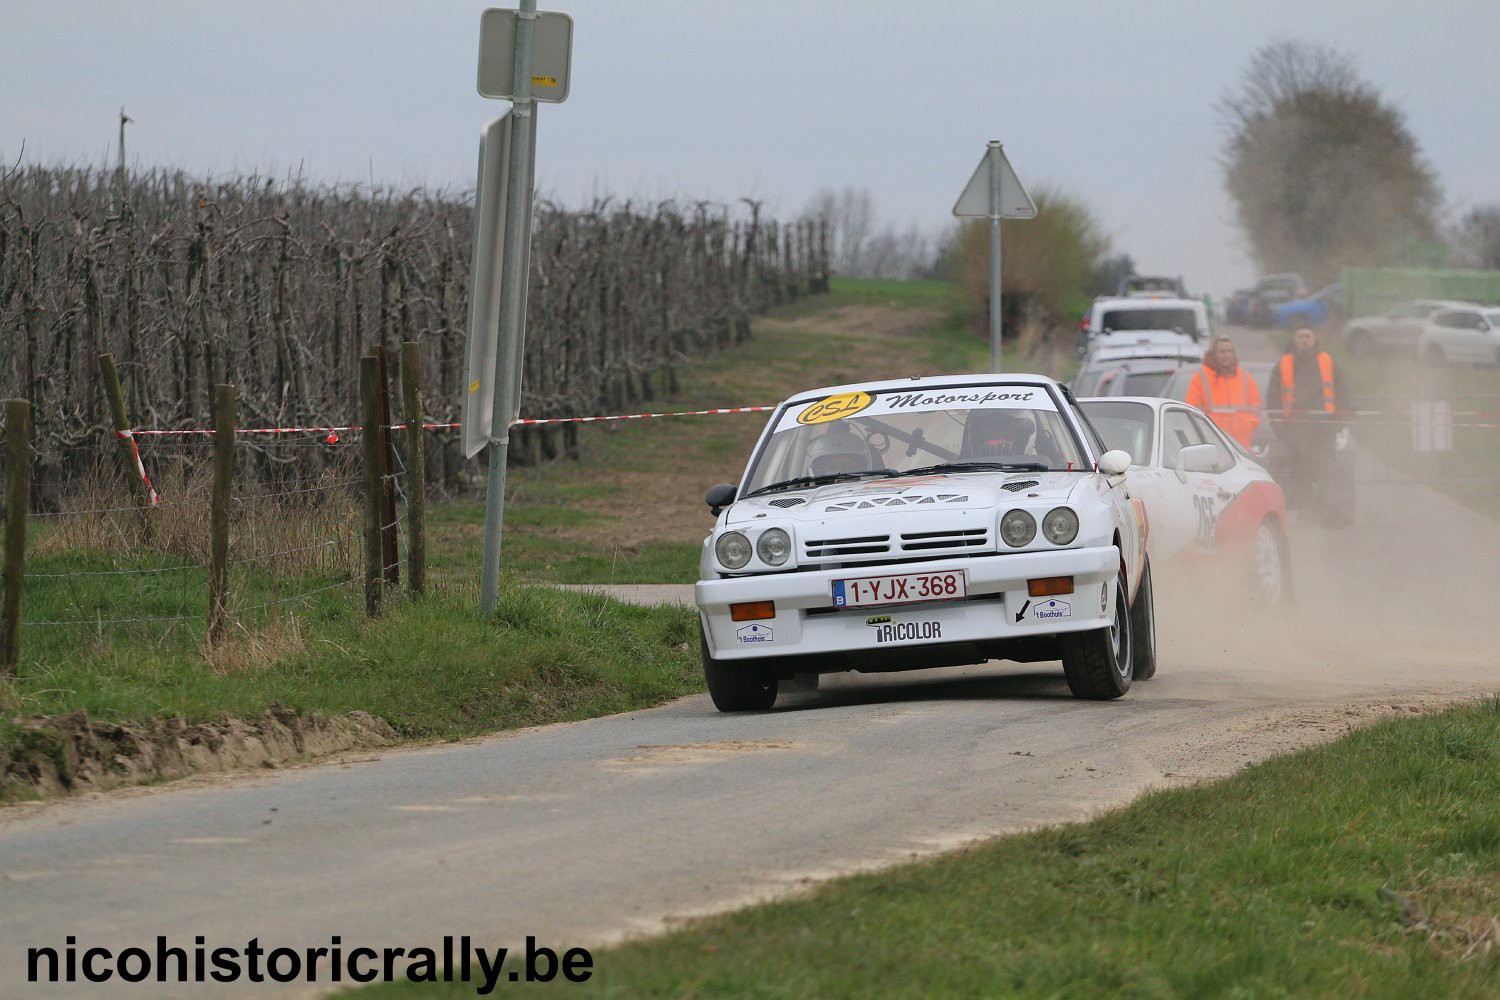 Wedstrijdverslag Stef Schoenmakers in de Rallye de Hannut: Het algemene tempo en gevoel zat goed !